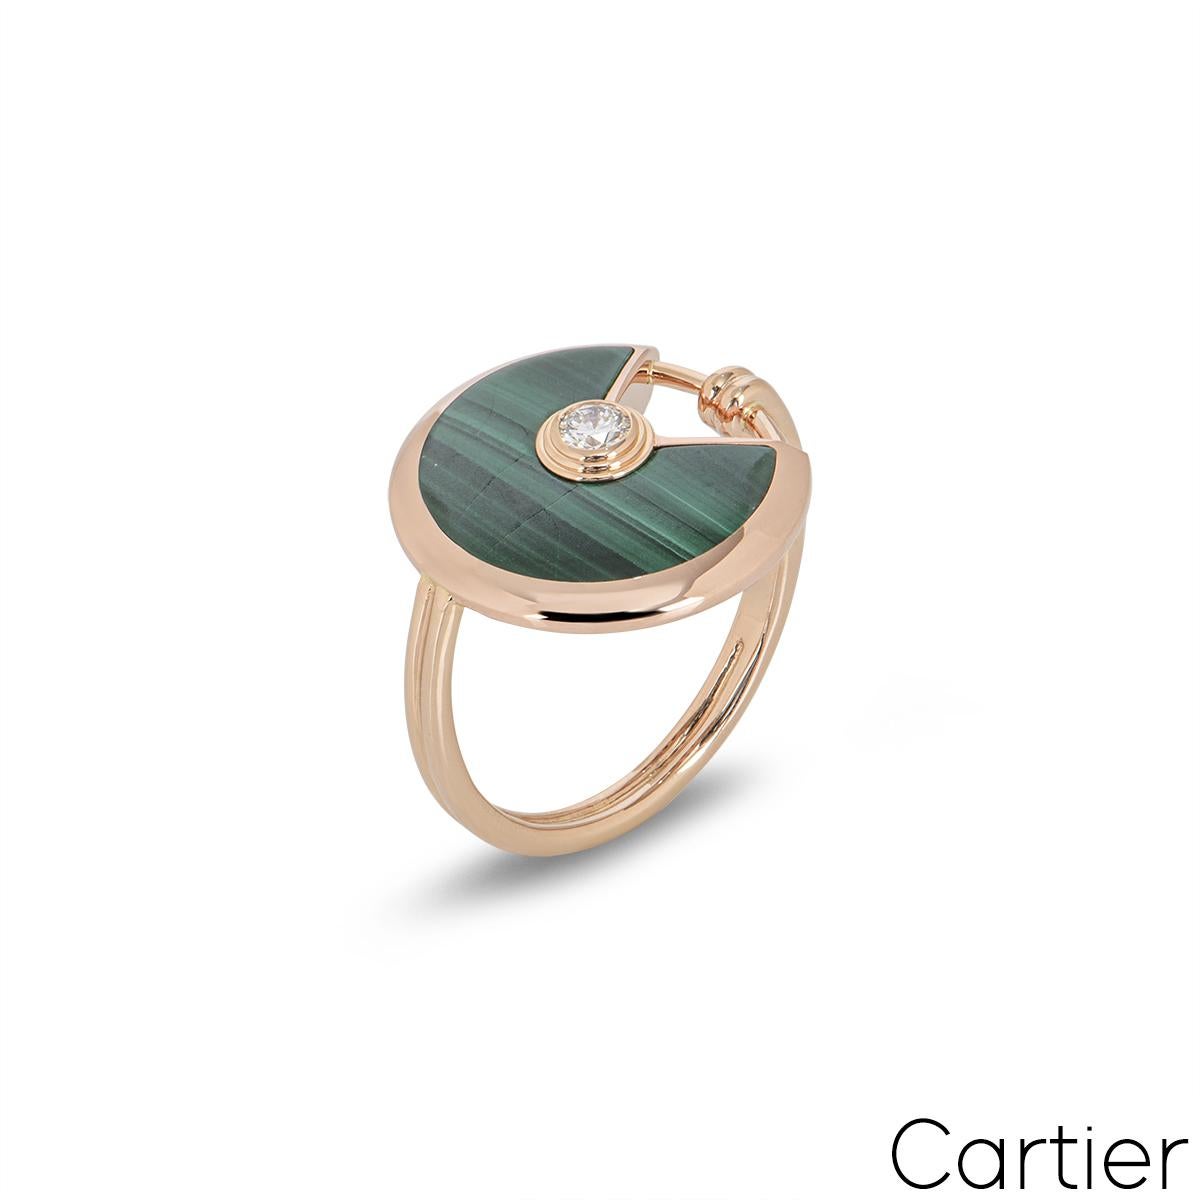 Ein Cartier-Ring aus 18 Karat Roségold aus der Collection Amulette de Cartier. Der Ring besteht aus einem kreisrunden Talisman, der mit Malachit besetzt ist und durch einen einzelnen runden Brillanten von 0,09 Karat in einer Reibefassung ergänzt